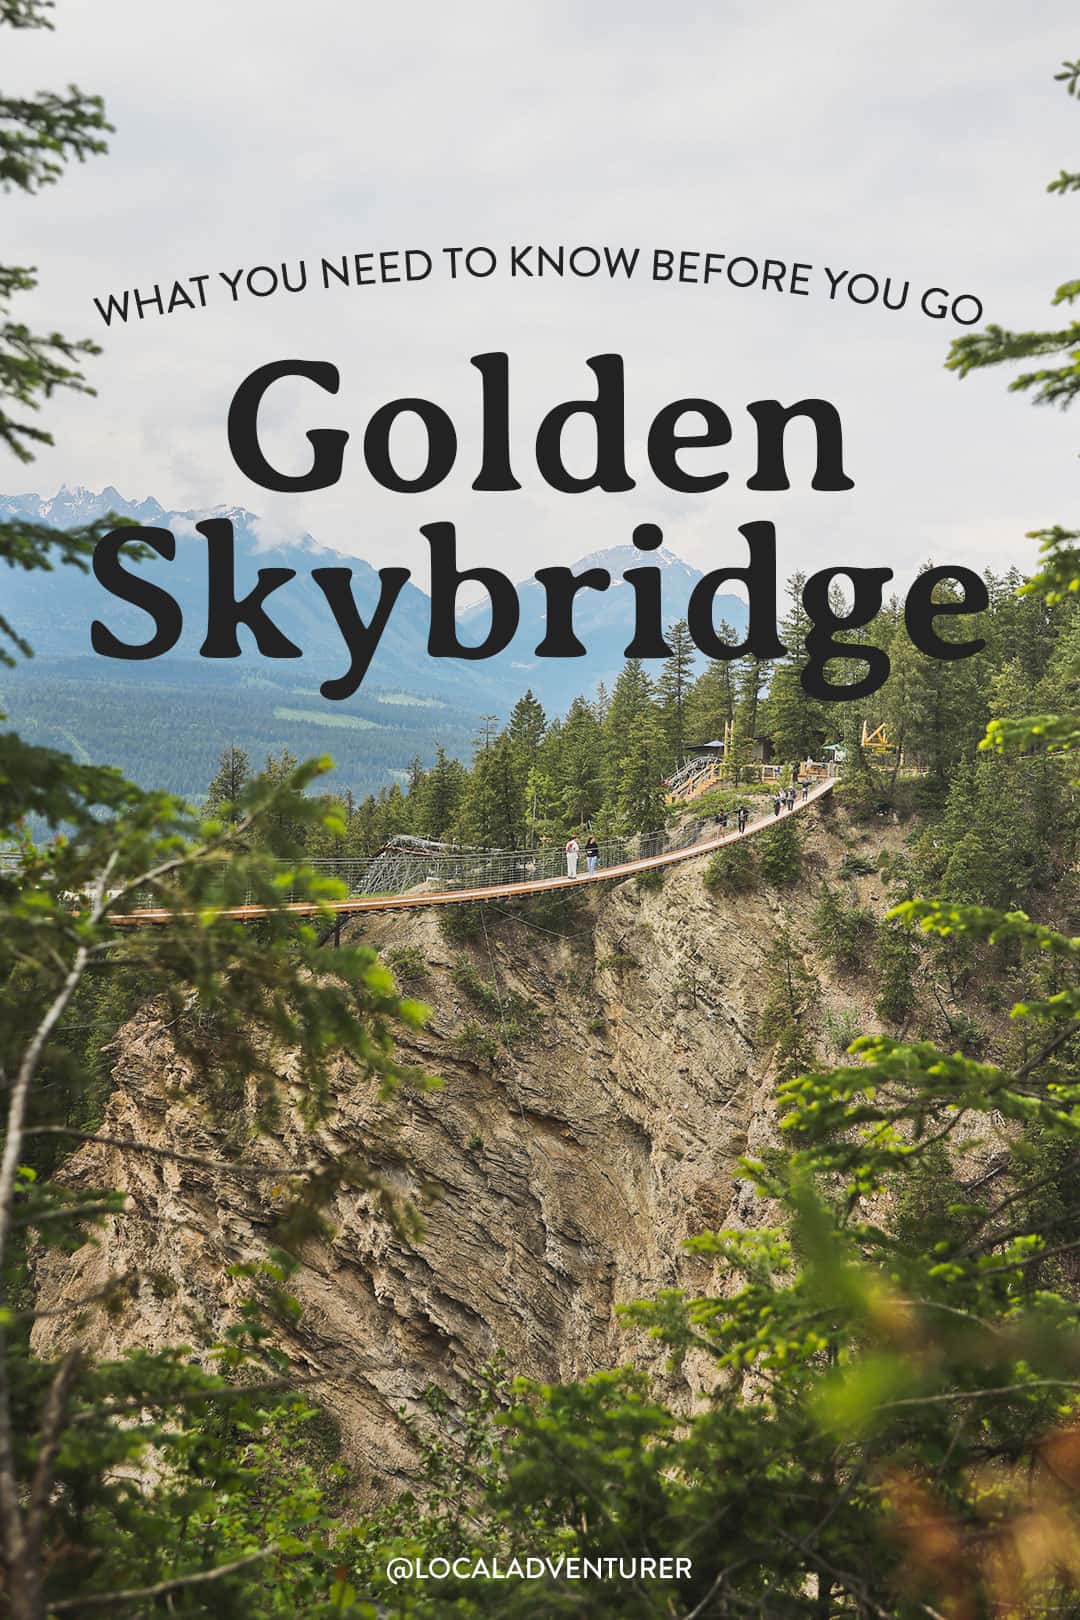 golden skybridge